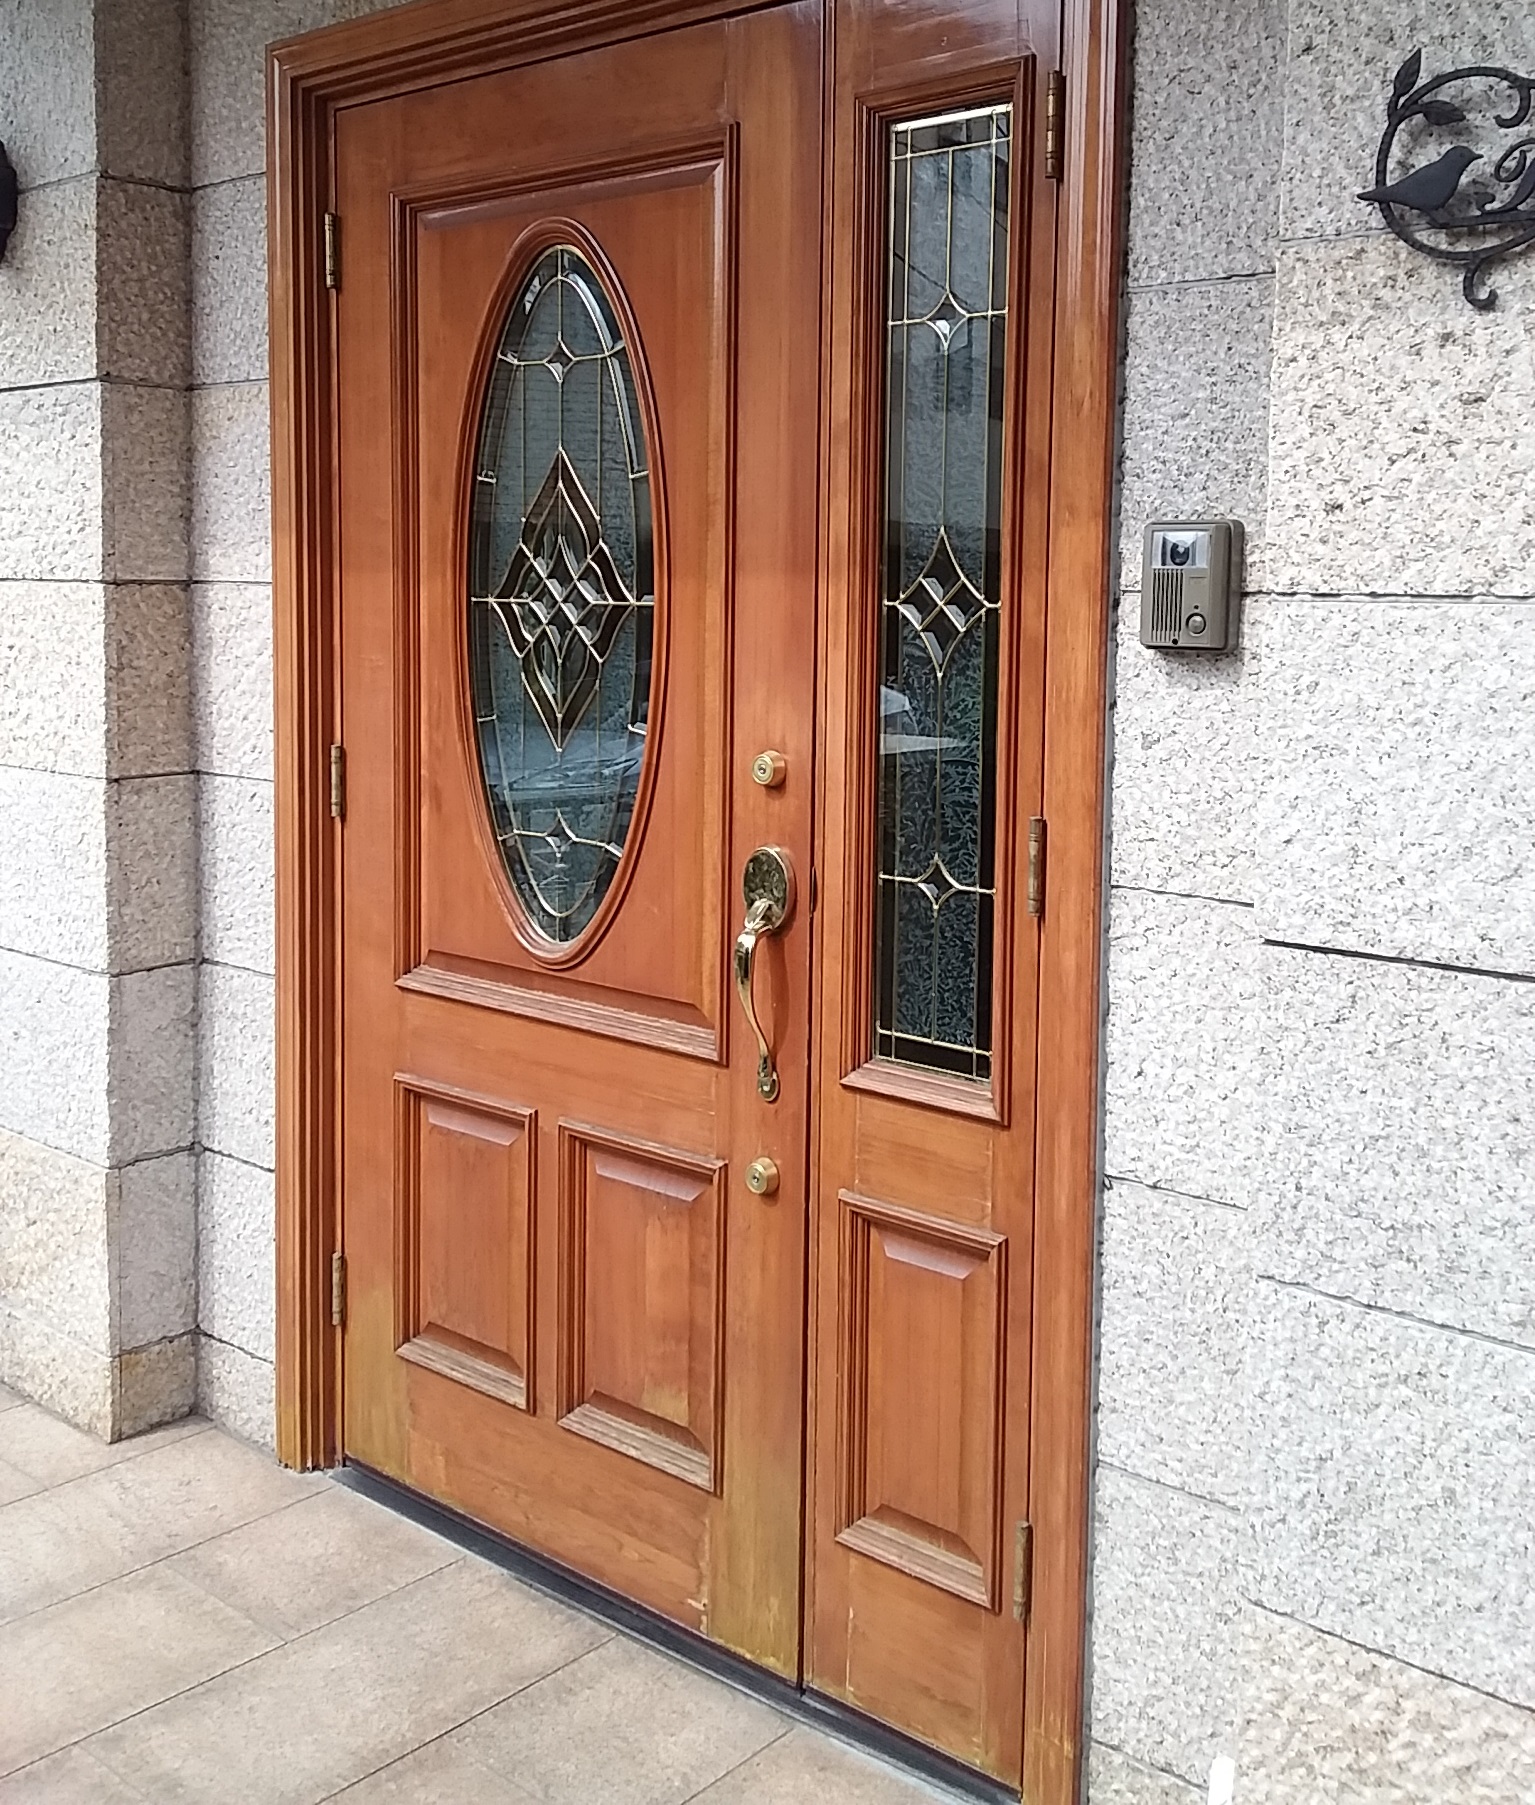 木製ドアは下のほうから腐ってきます 東京都大田区の工事事例 Lixilリシェントc15型 玄関ドアのリフォームなら玄関ドアマイスターへお任せください